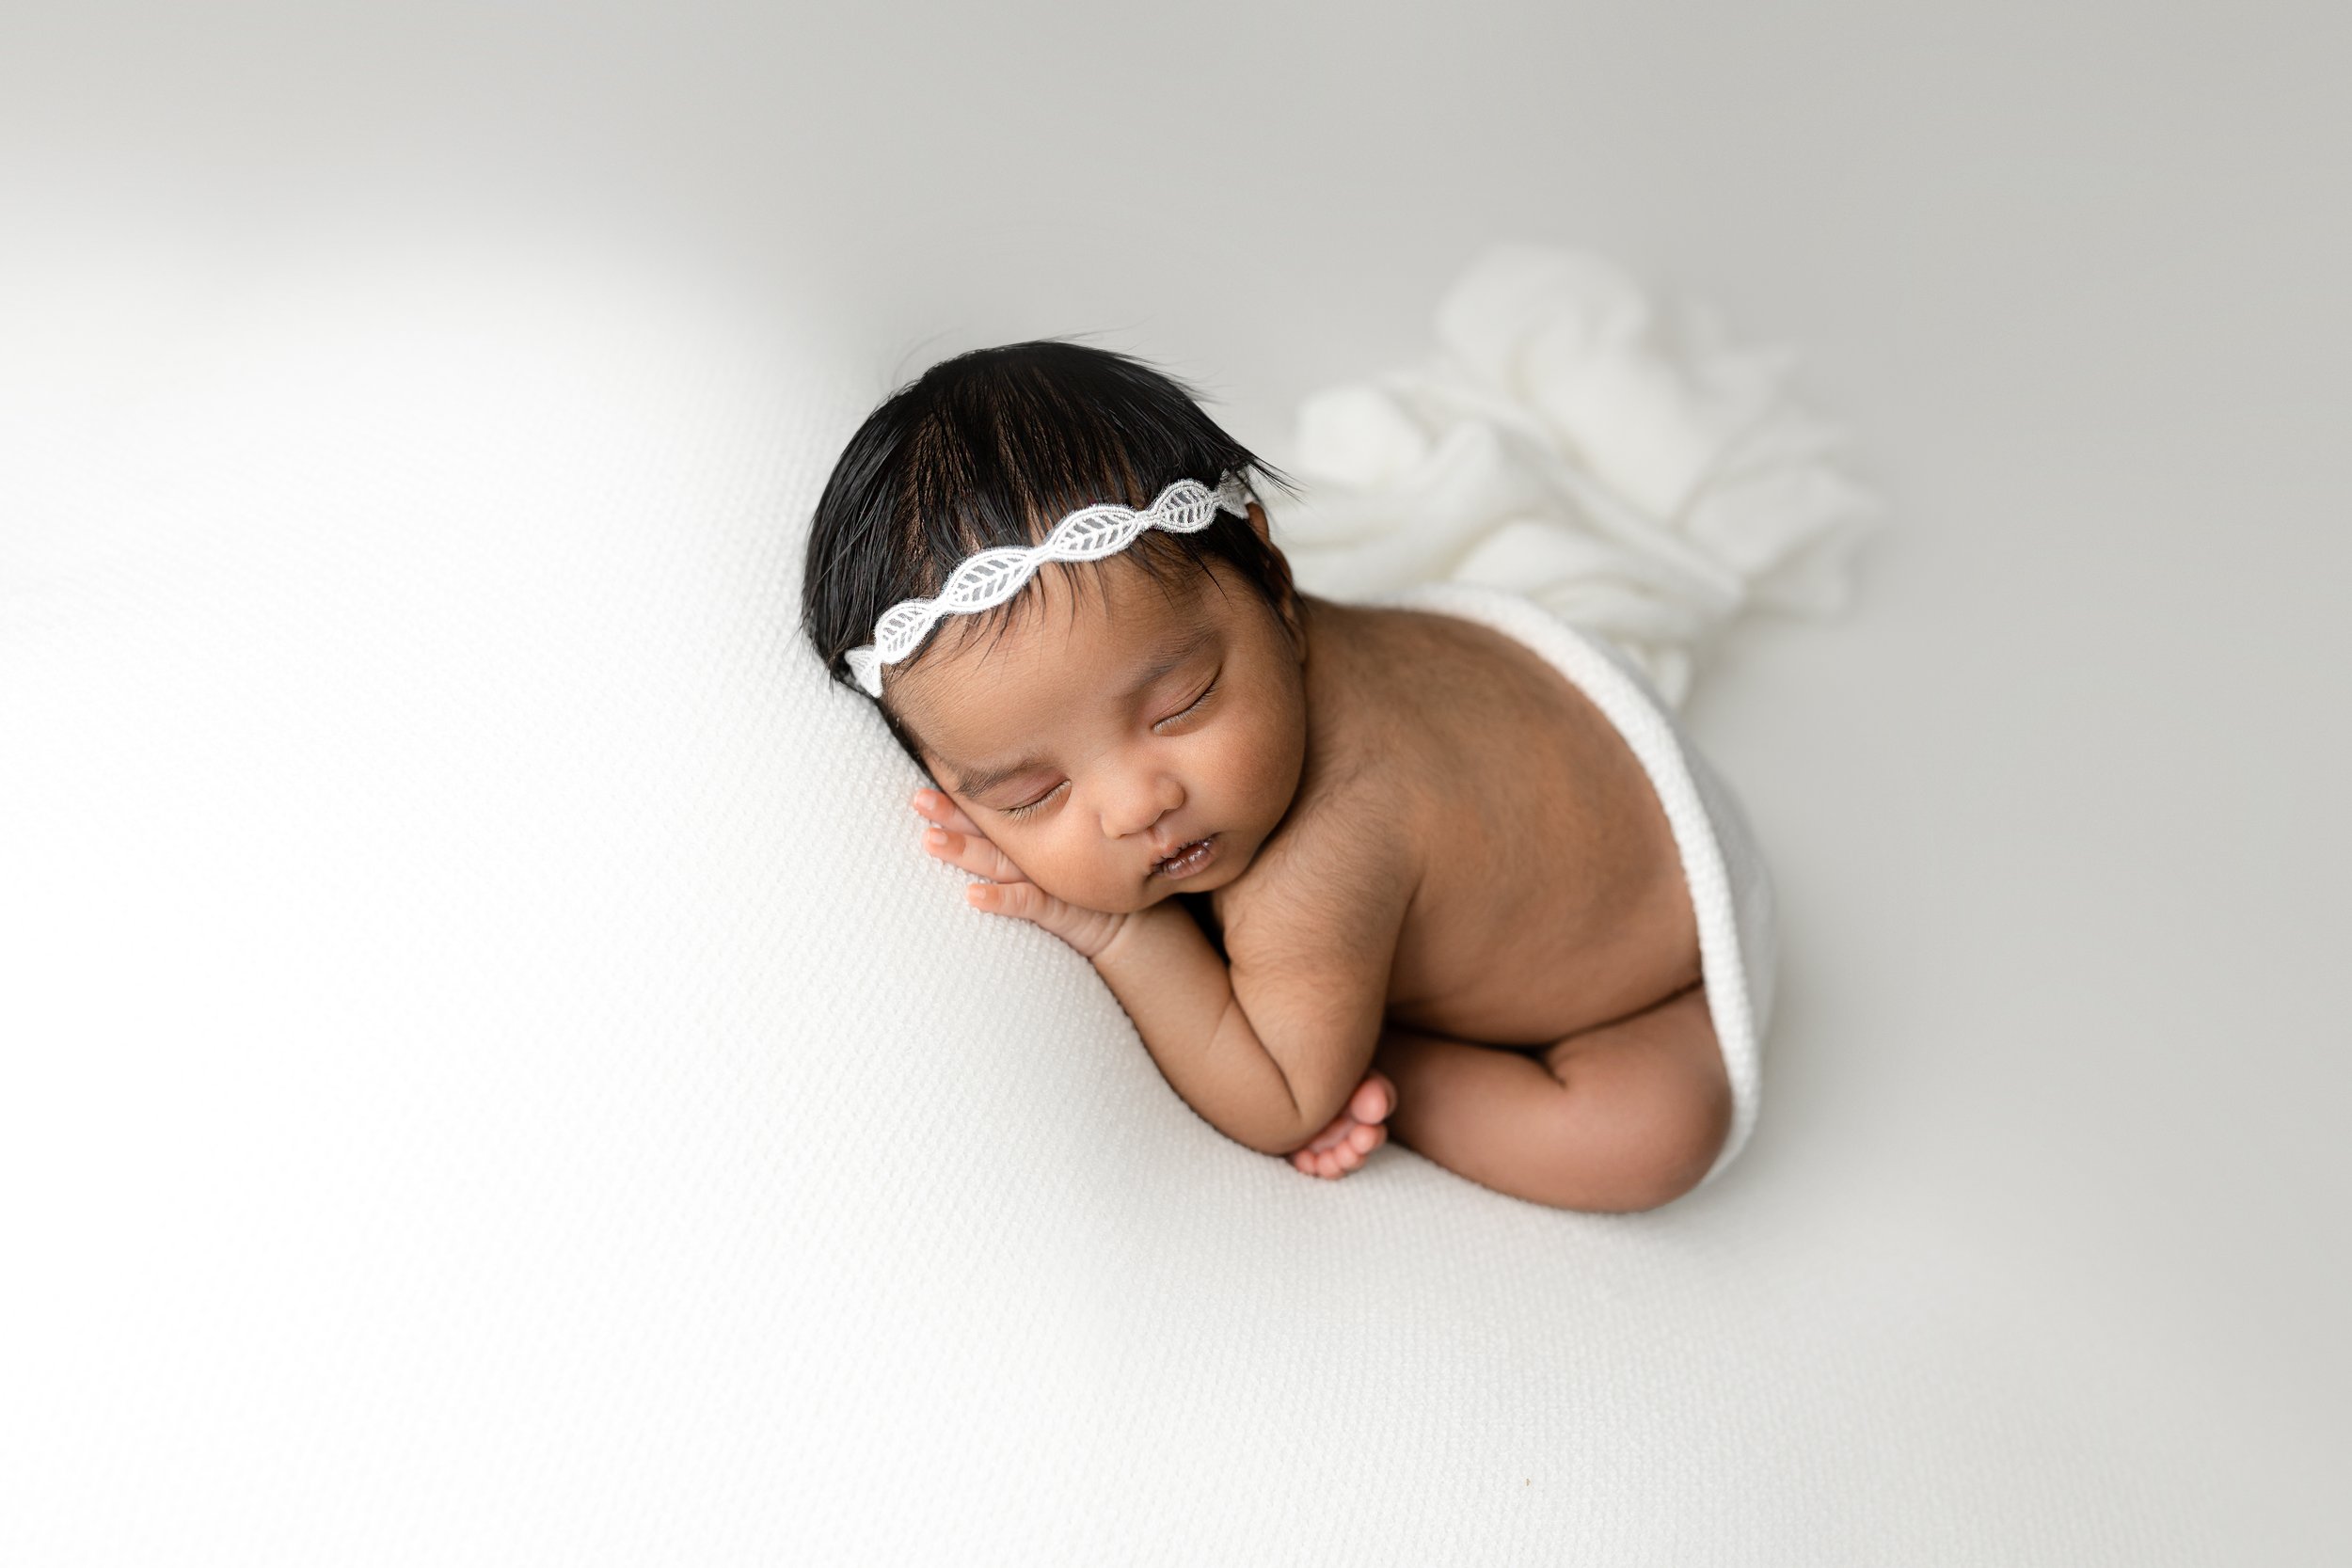 sasha-columbus-newborn-photographer-55.jpg